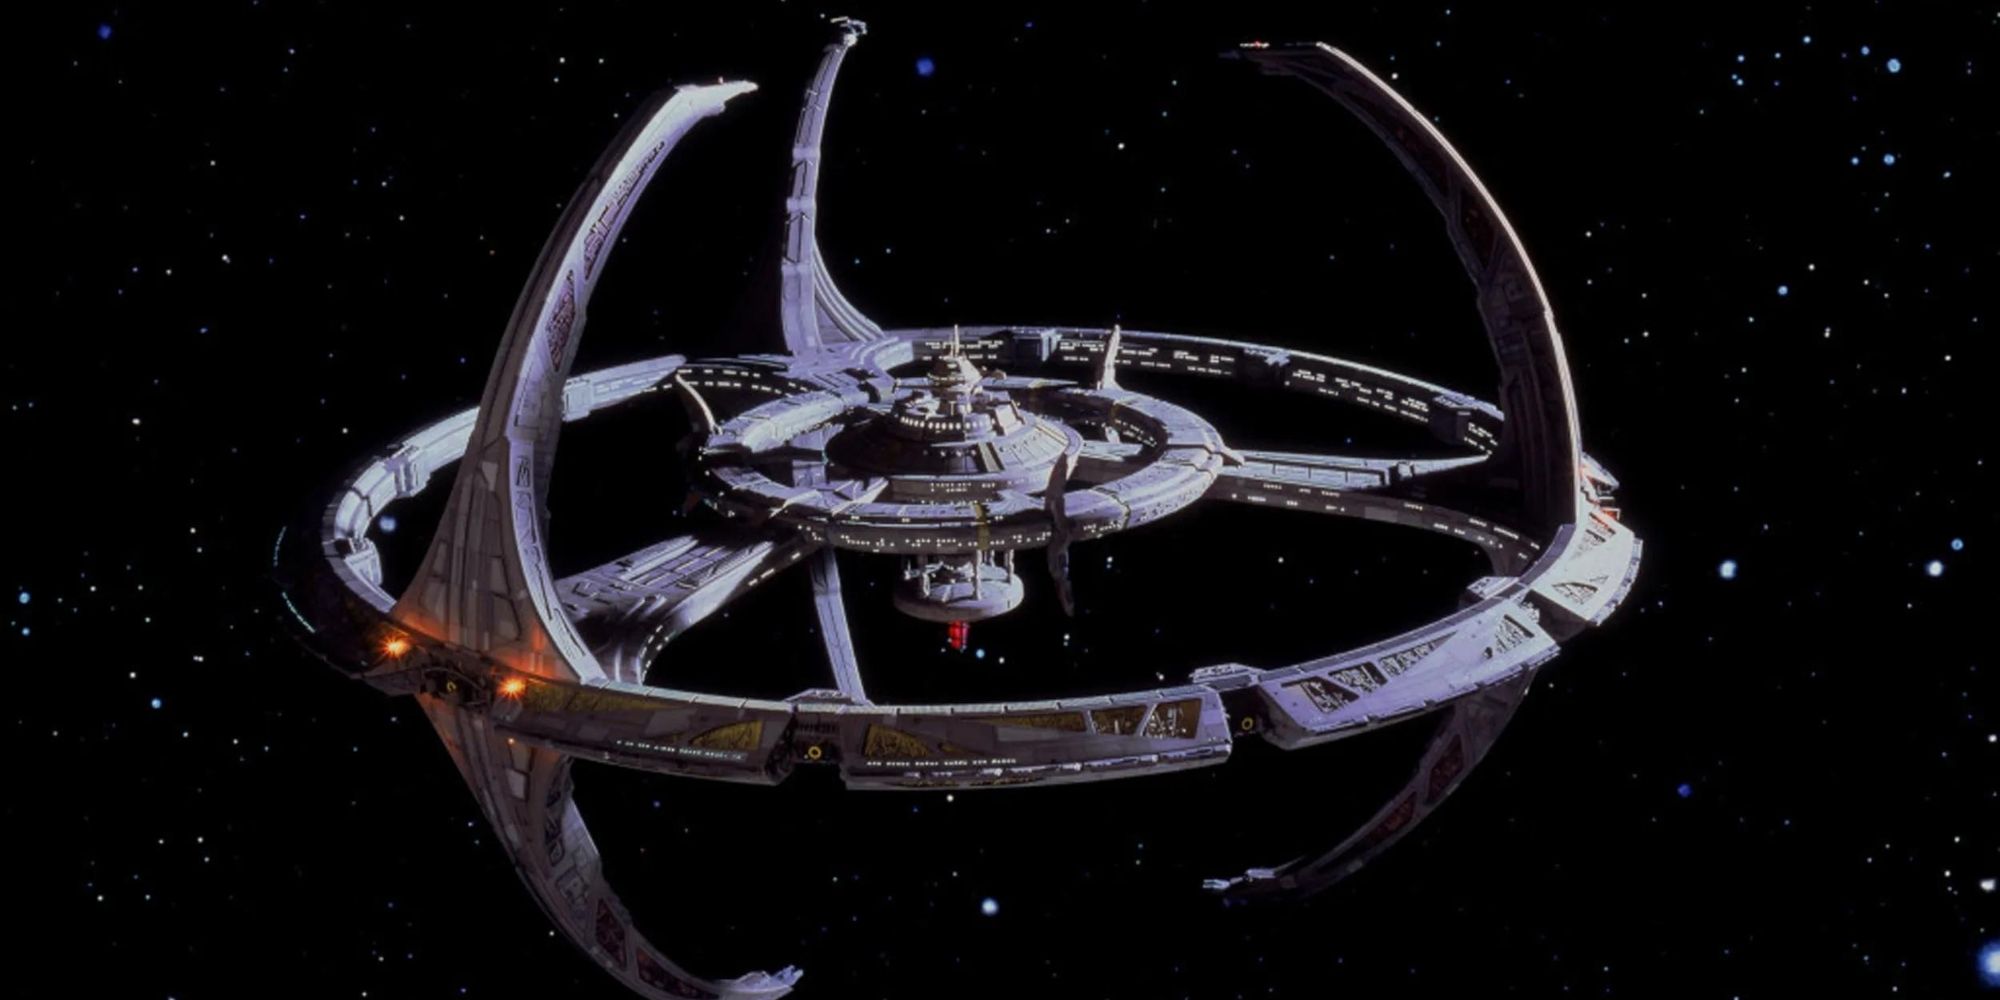 Deep Space Nine in Star Trek